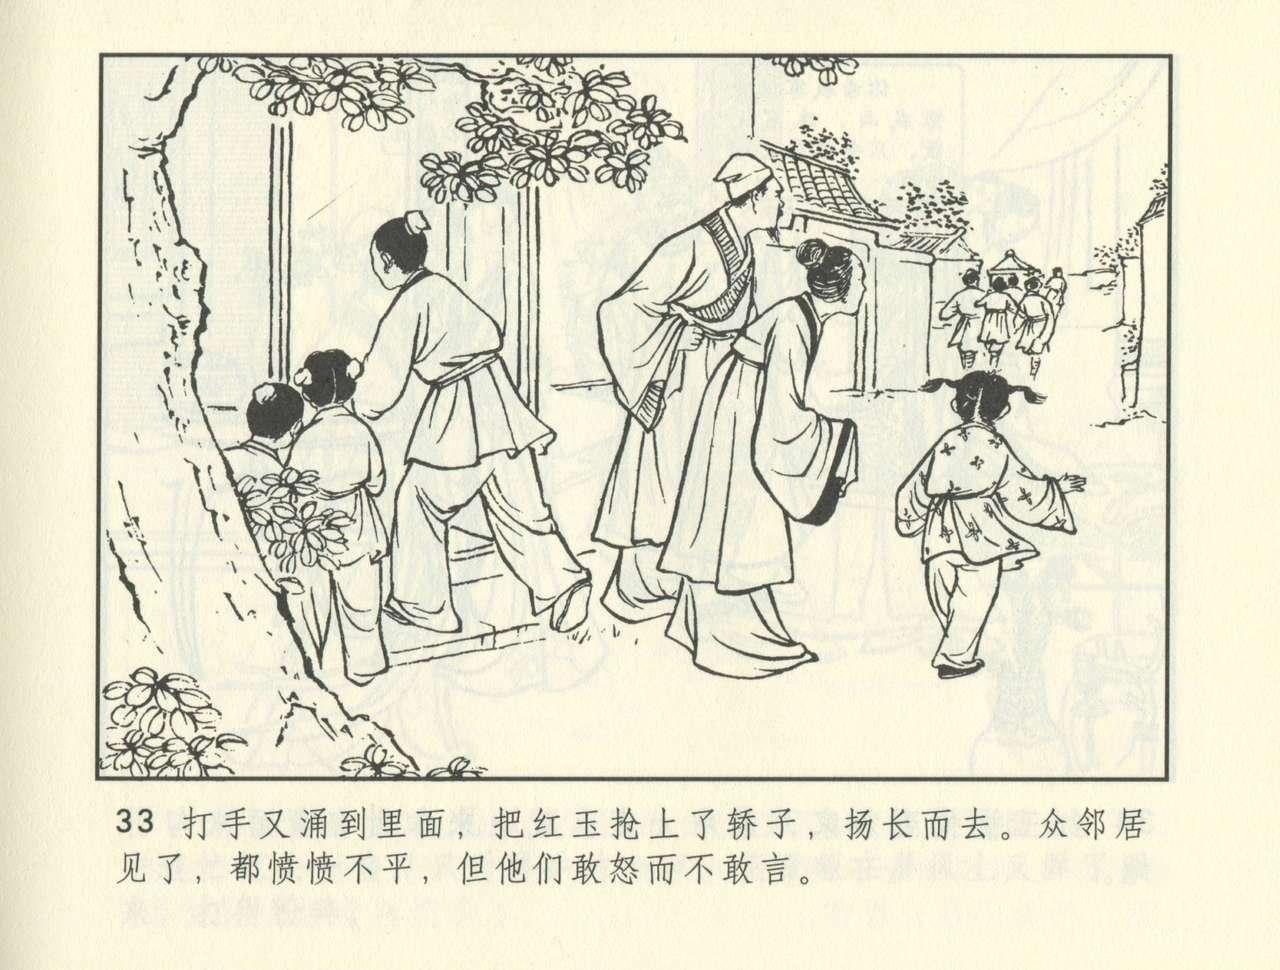 聊斋志异 张玮等绘 天津人民美术出版社 卷二十一 ~ 三十 373